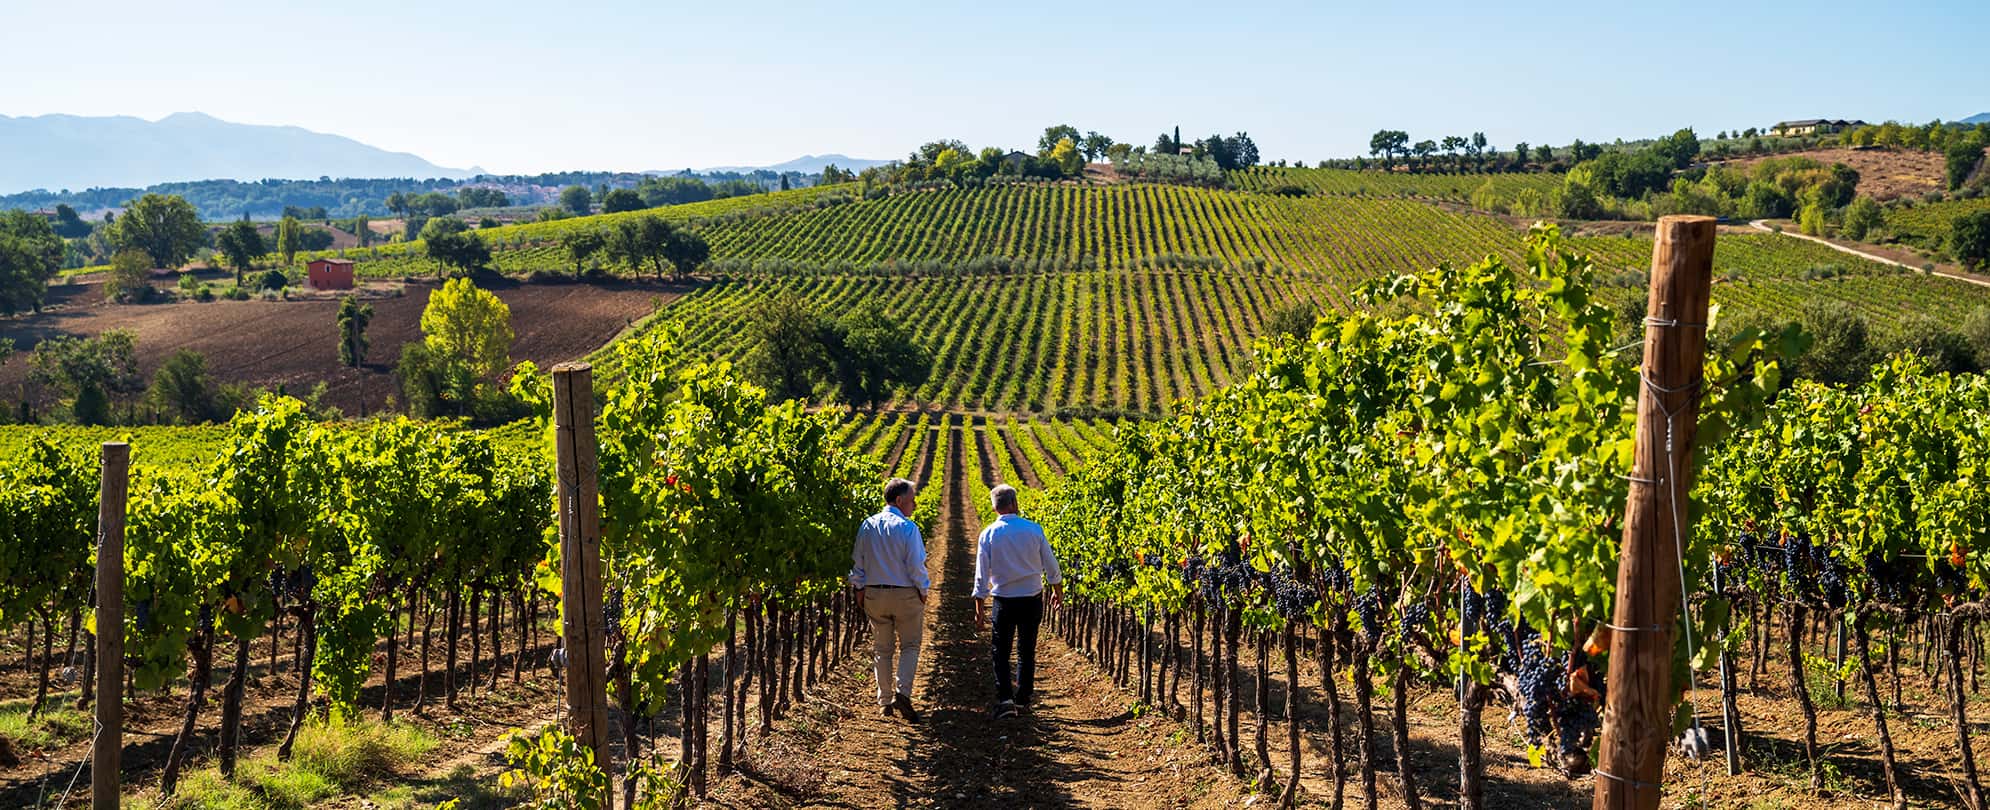 Two men walking through a wine vineyard